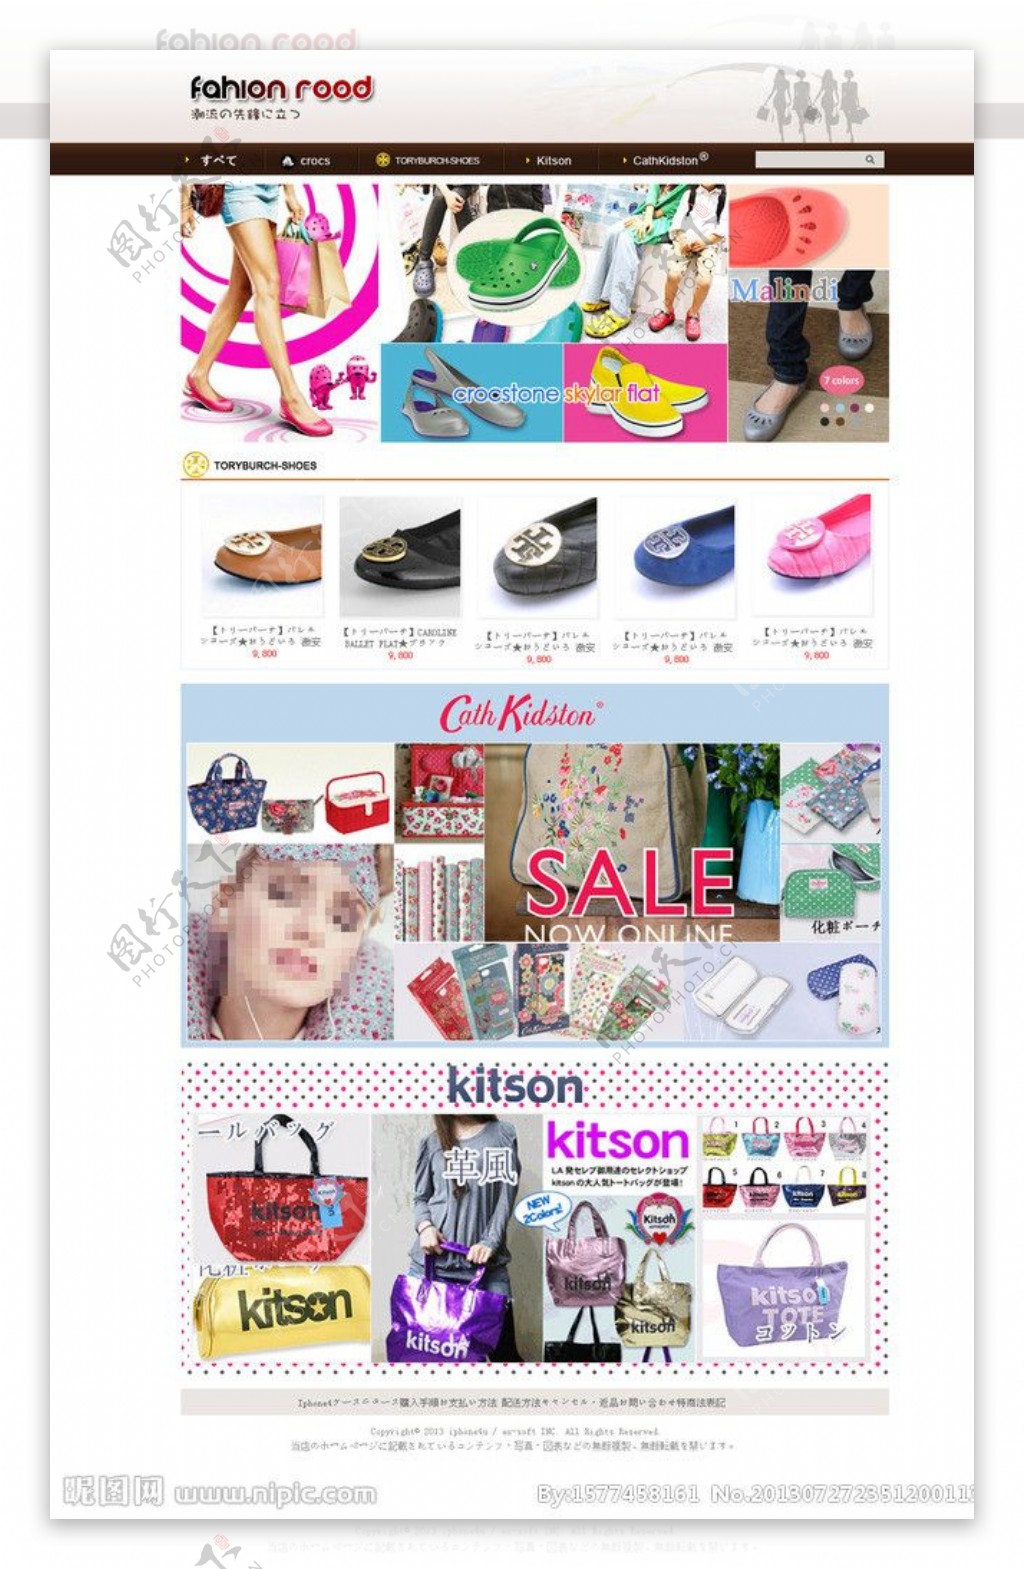 日本女性潮流购物网站图片